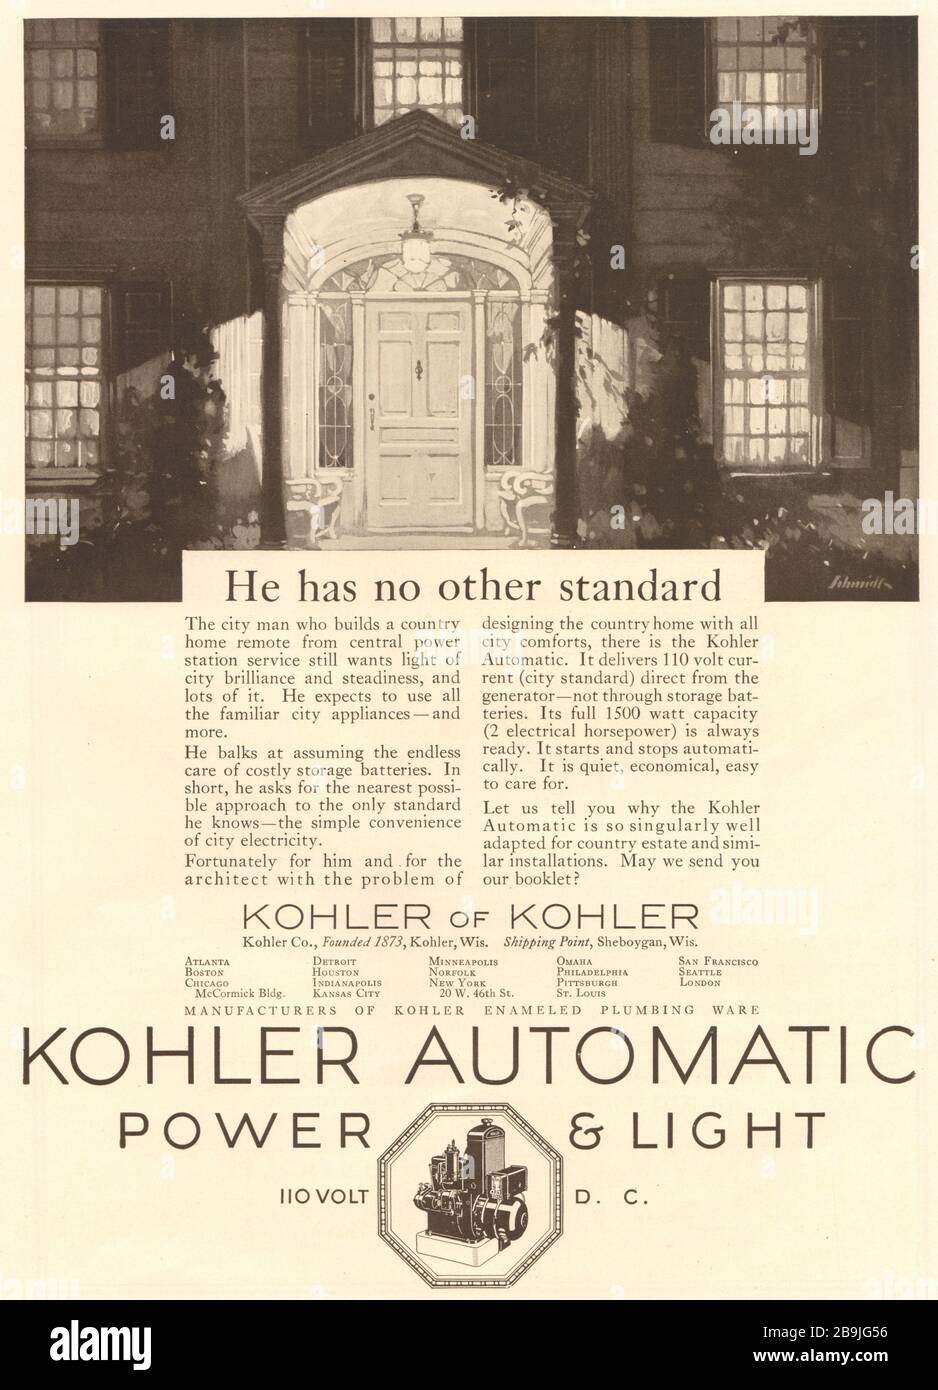 Alimentazione e luce automatiche Kohler. Non ha altri standard. Kohler di Kohler, Kohler Co., fondata nel 1873, Kohler, Wisconsin (1922) Foto Stock